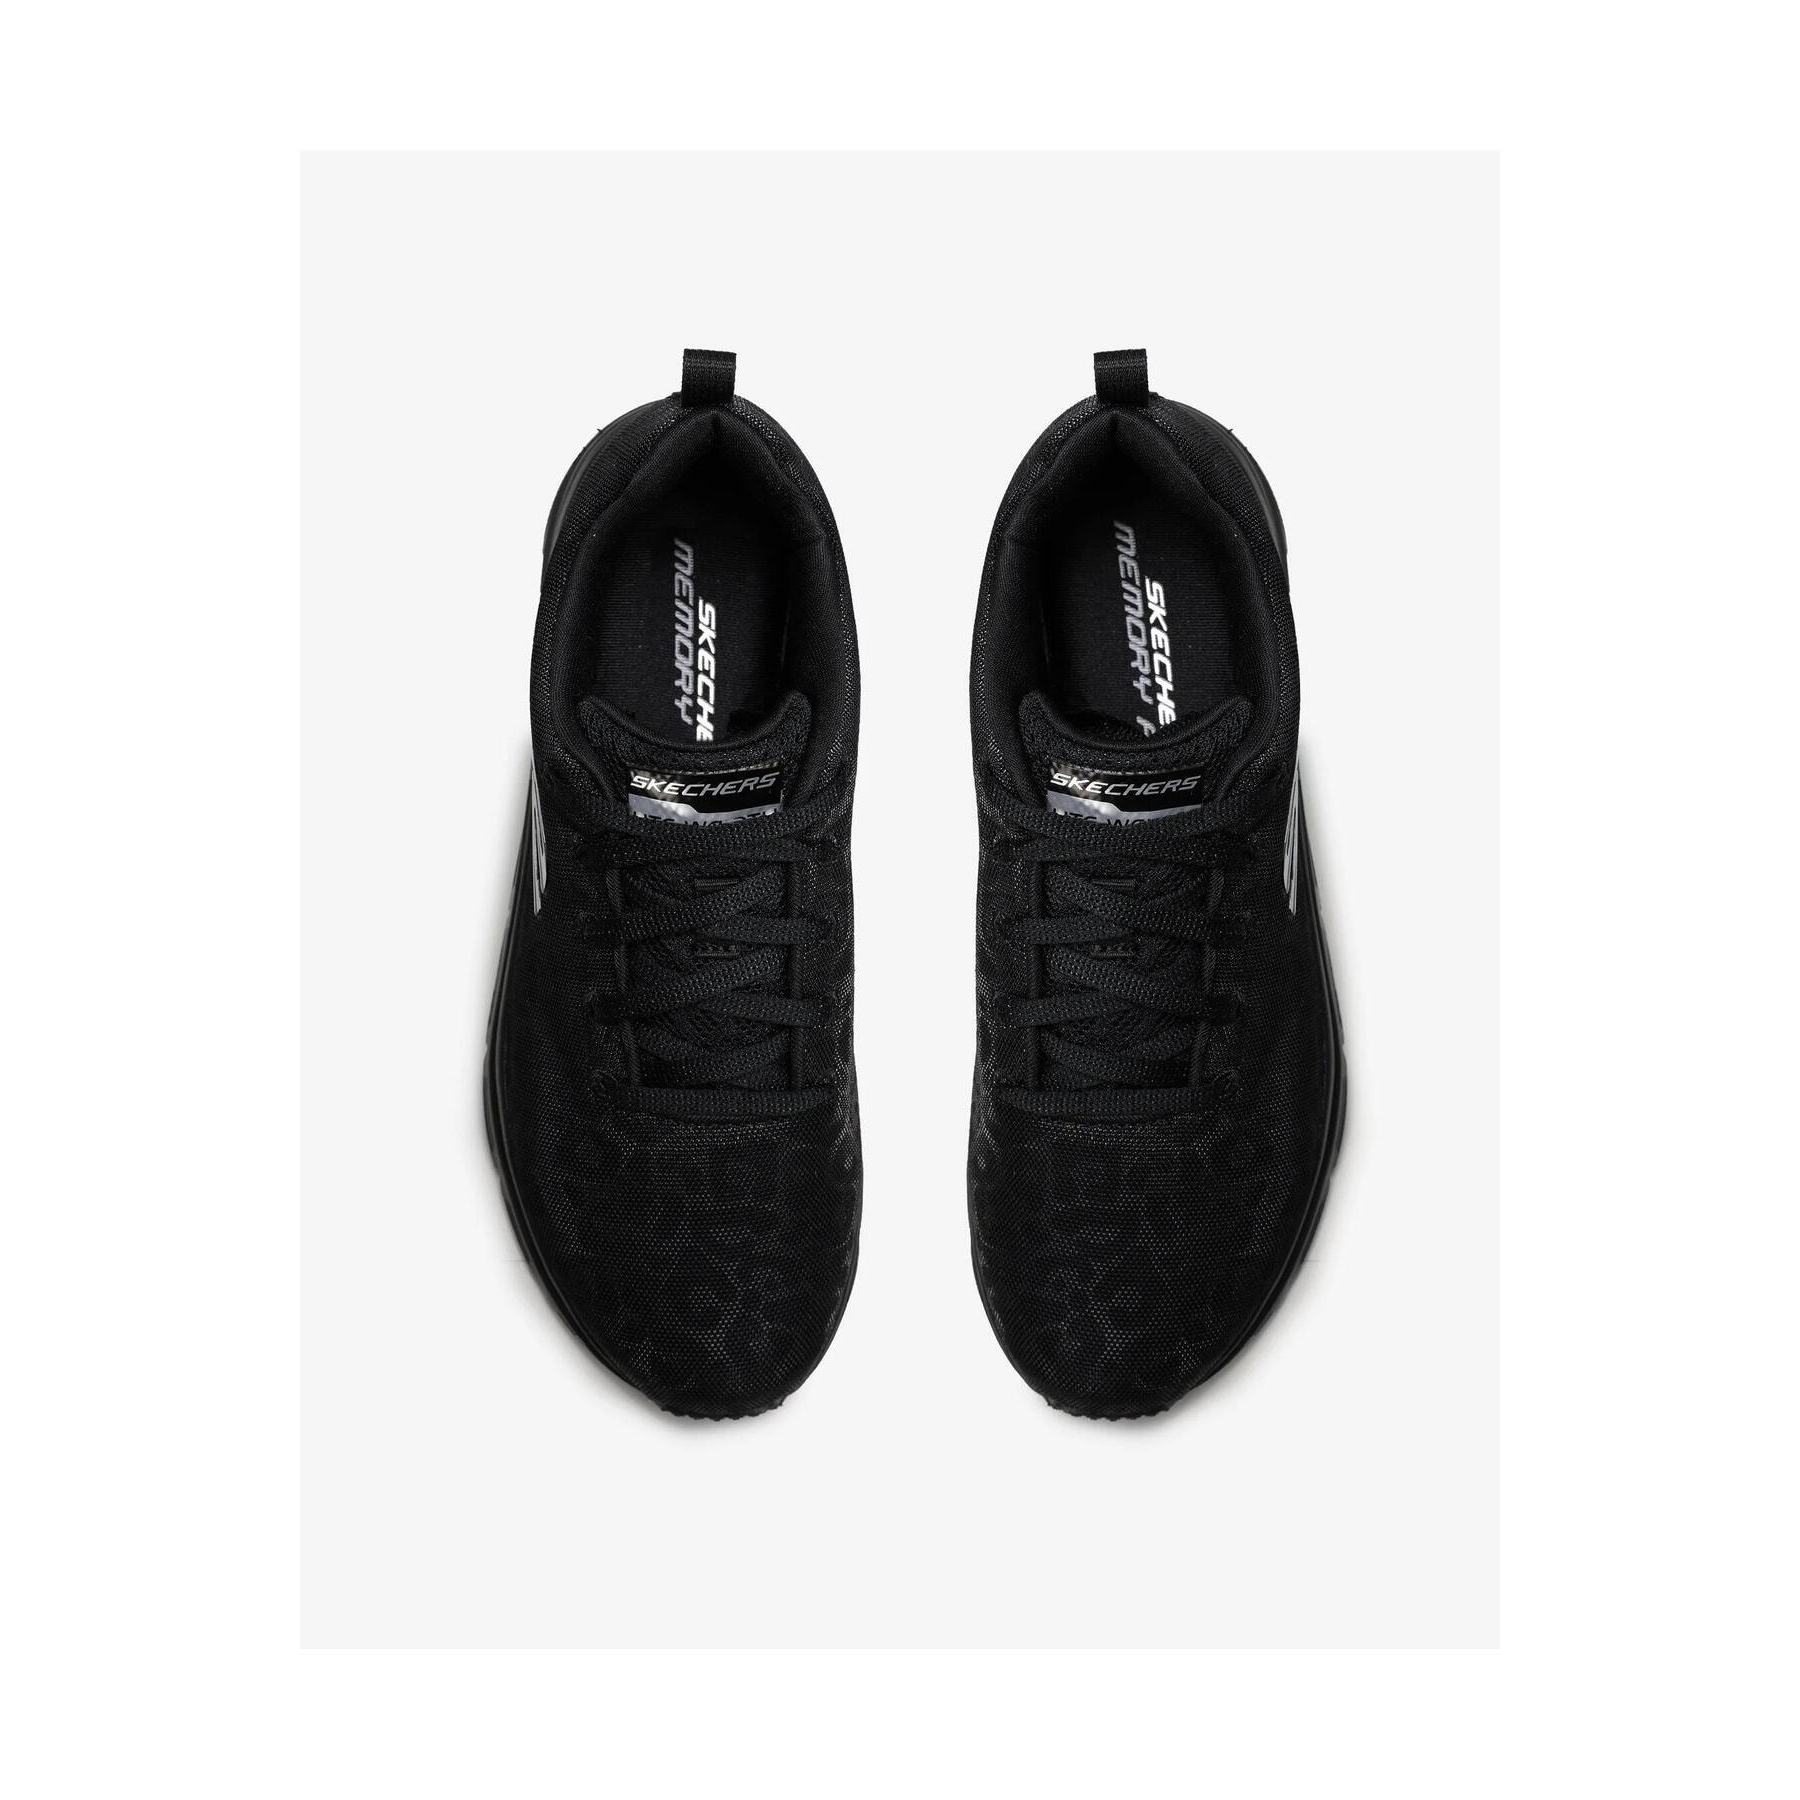 Skechers Fashi̇on Fi̇t Kadın Siyah Koşu Ayakkabısı (88888179TK BBK)